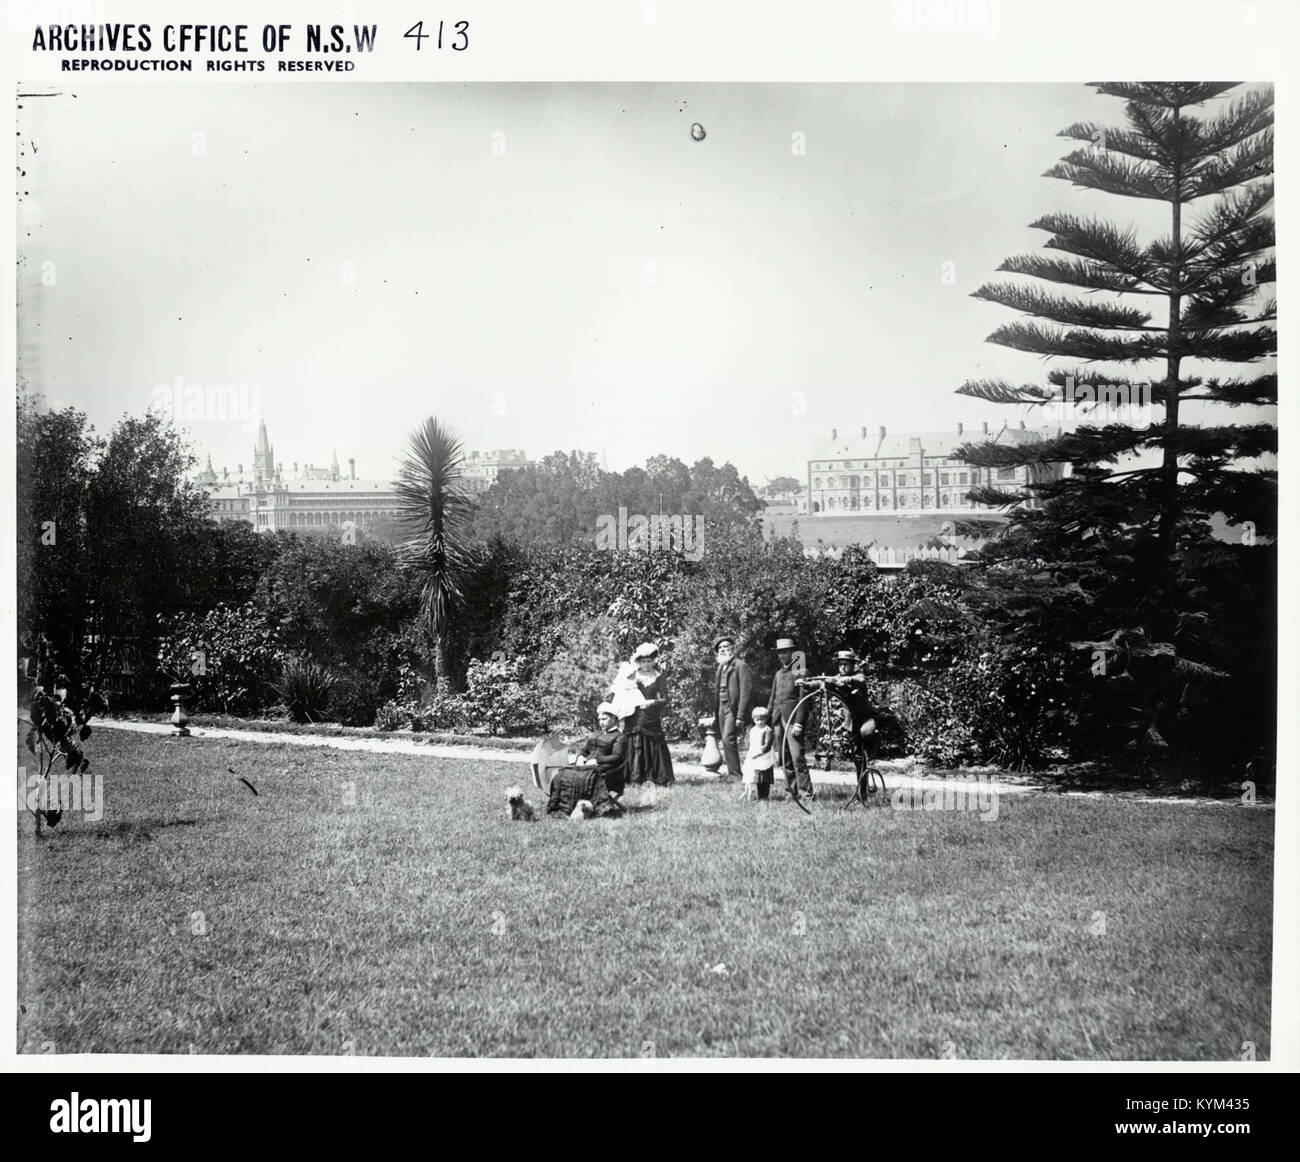 Sydney University - surrounding grounds 37540755214 o Stock Photo